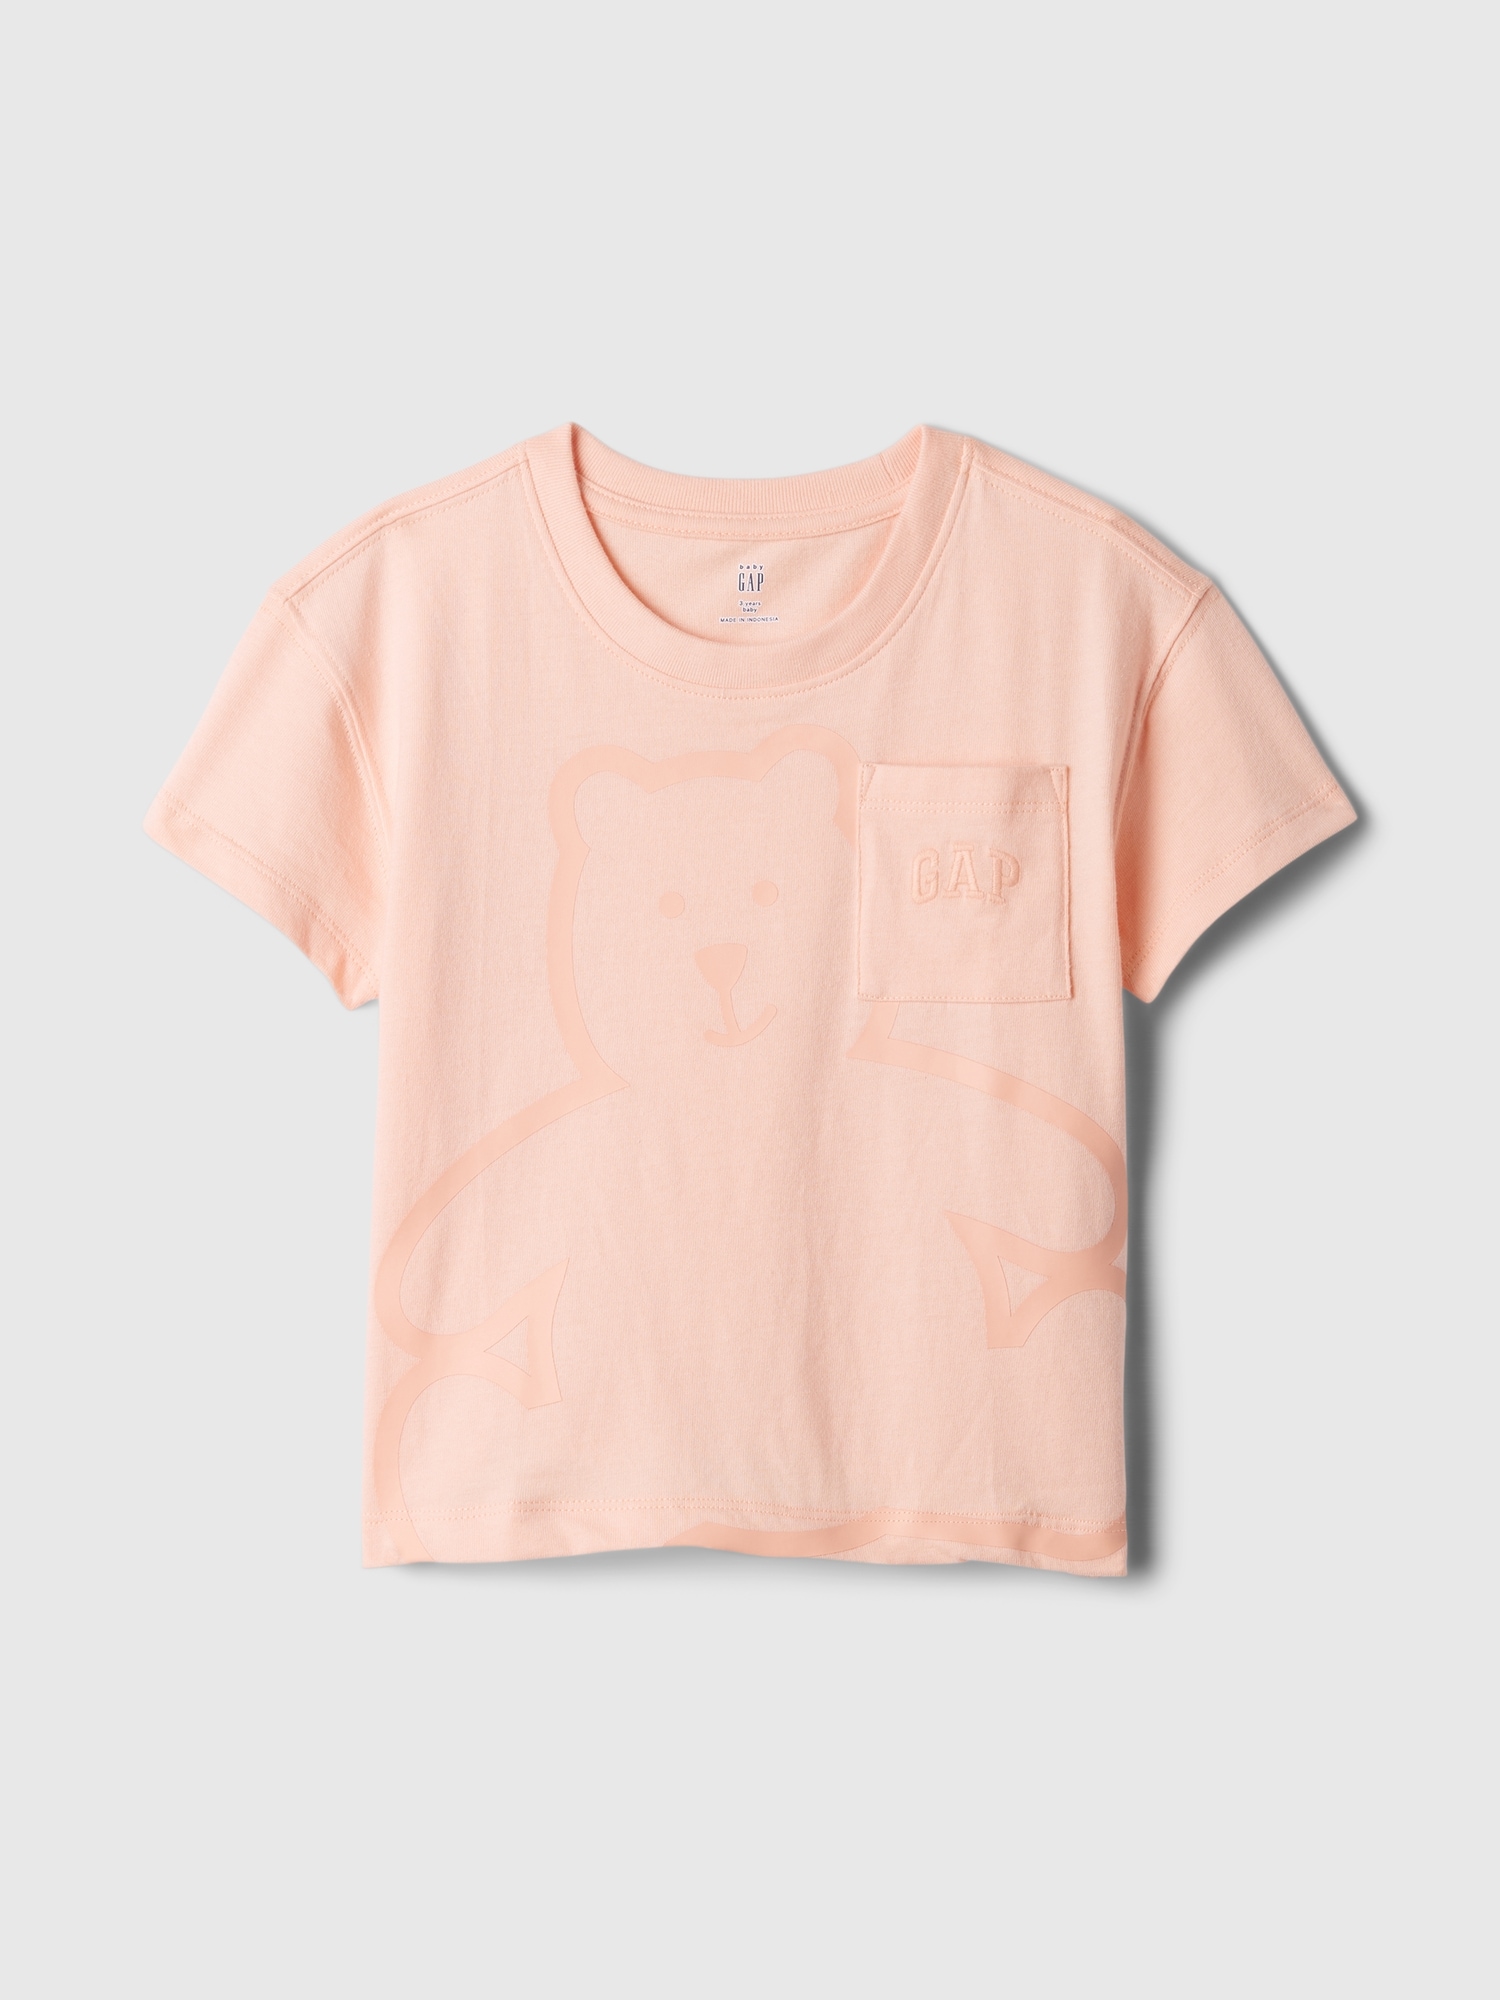 ブラナンベア Gapロゴ グラフィックtシャツ (幼児)